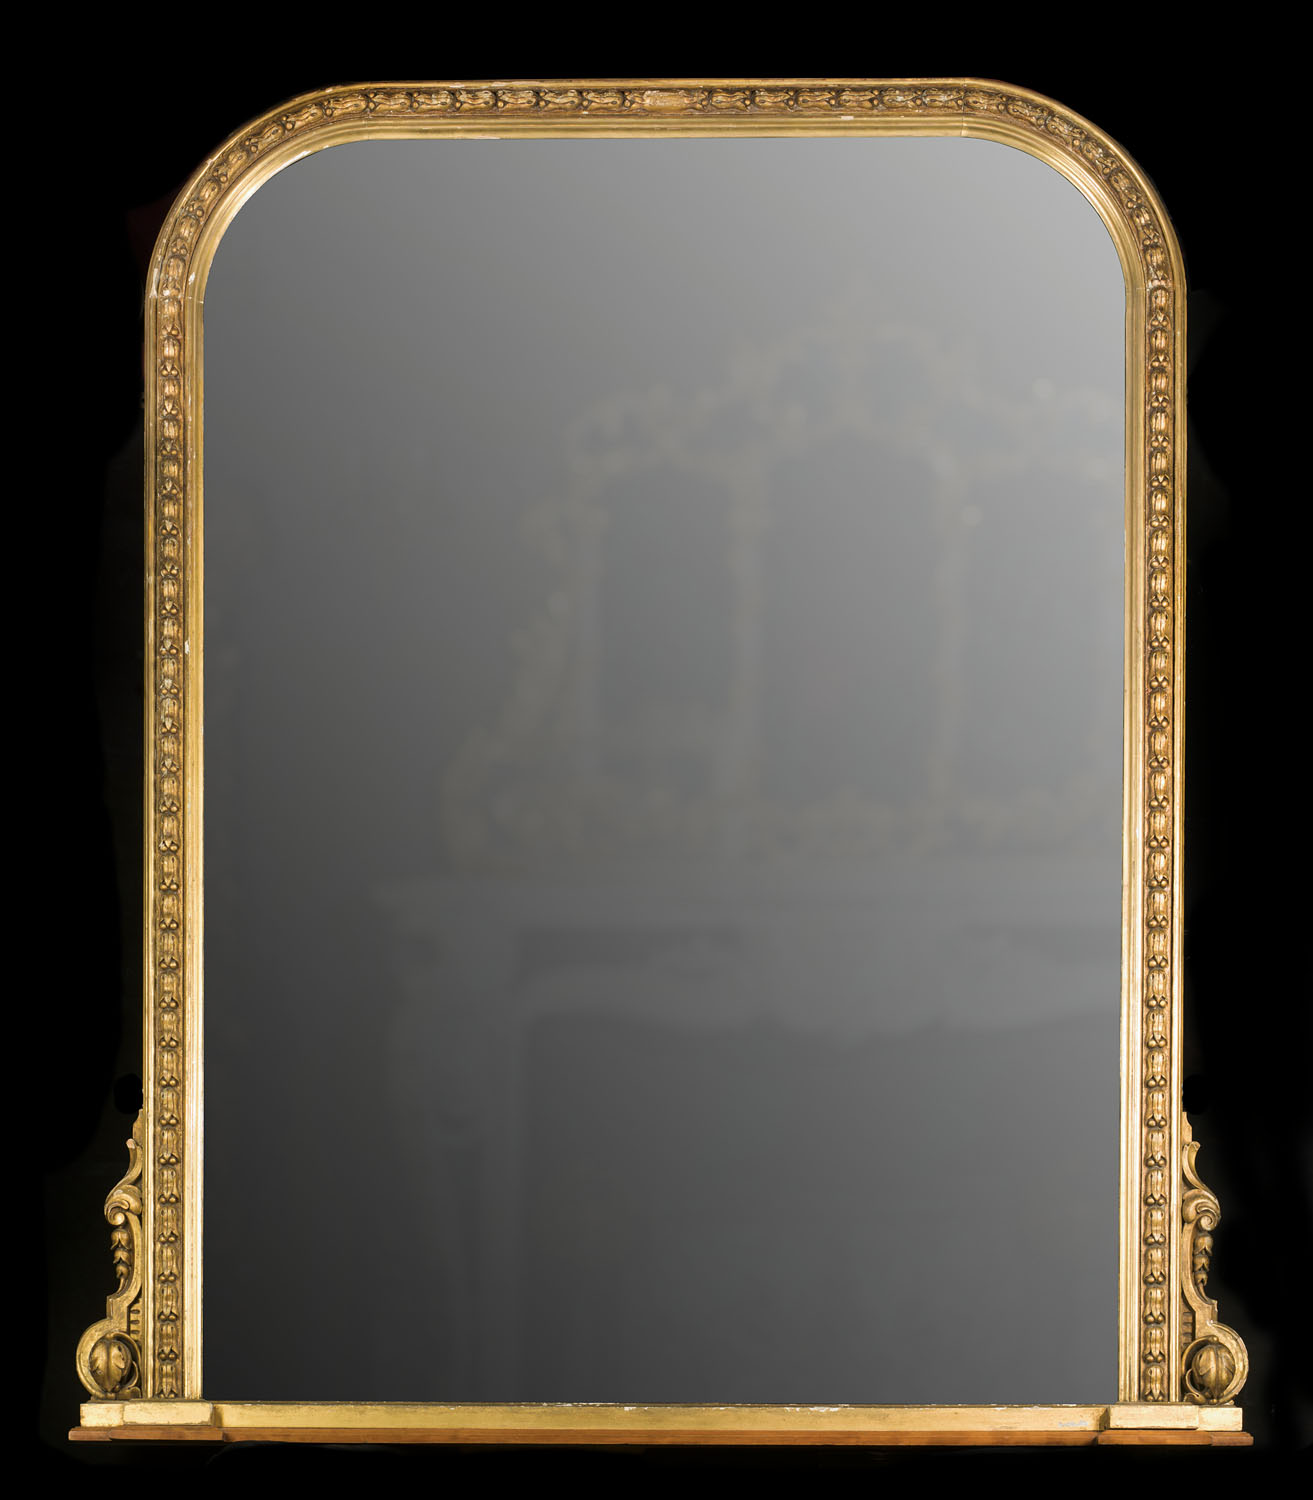 Large antique mirrors replacing existing signature